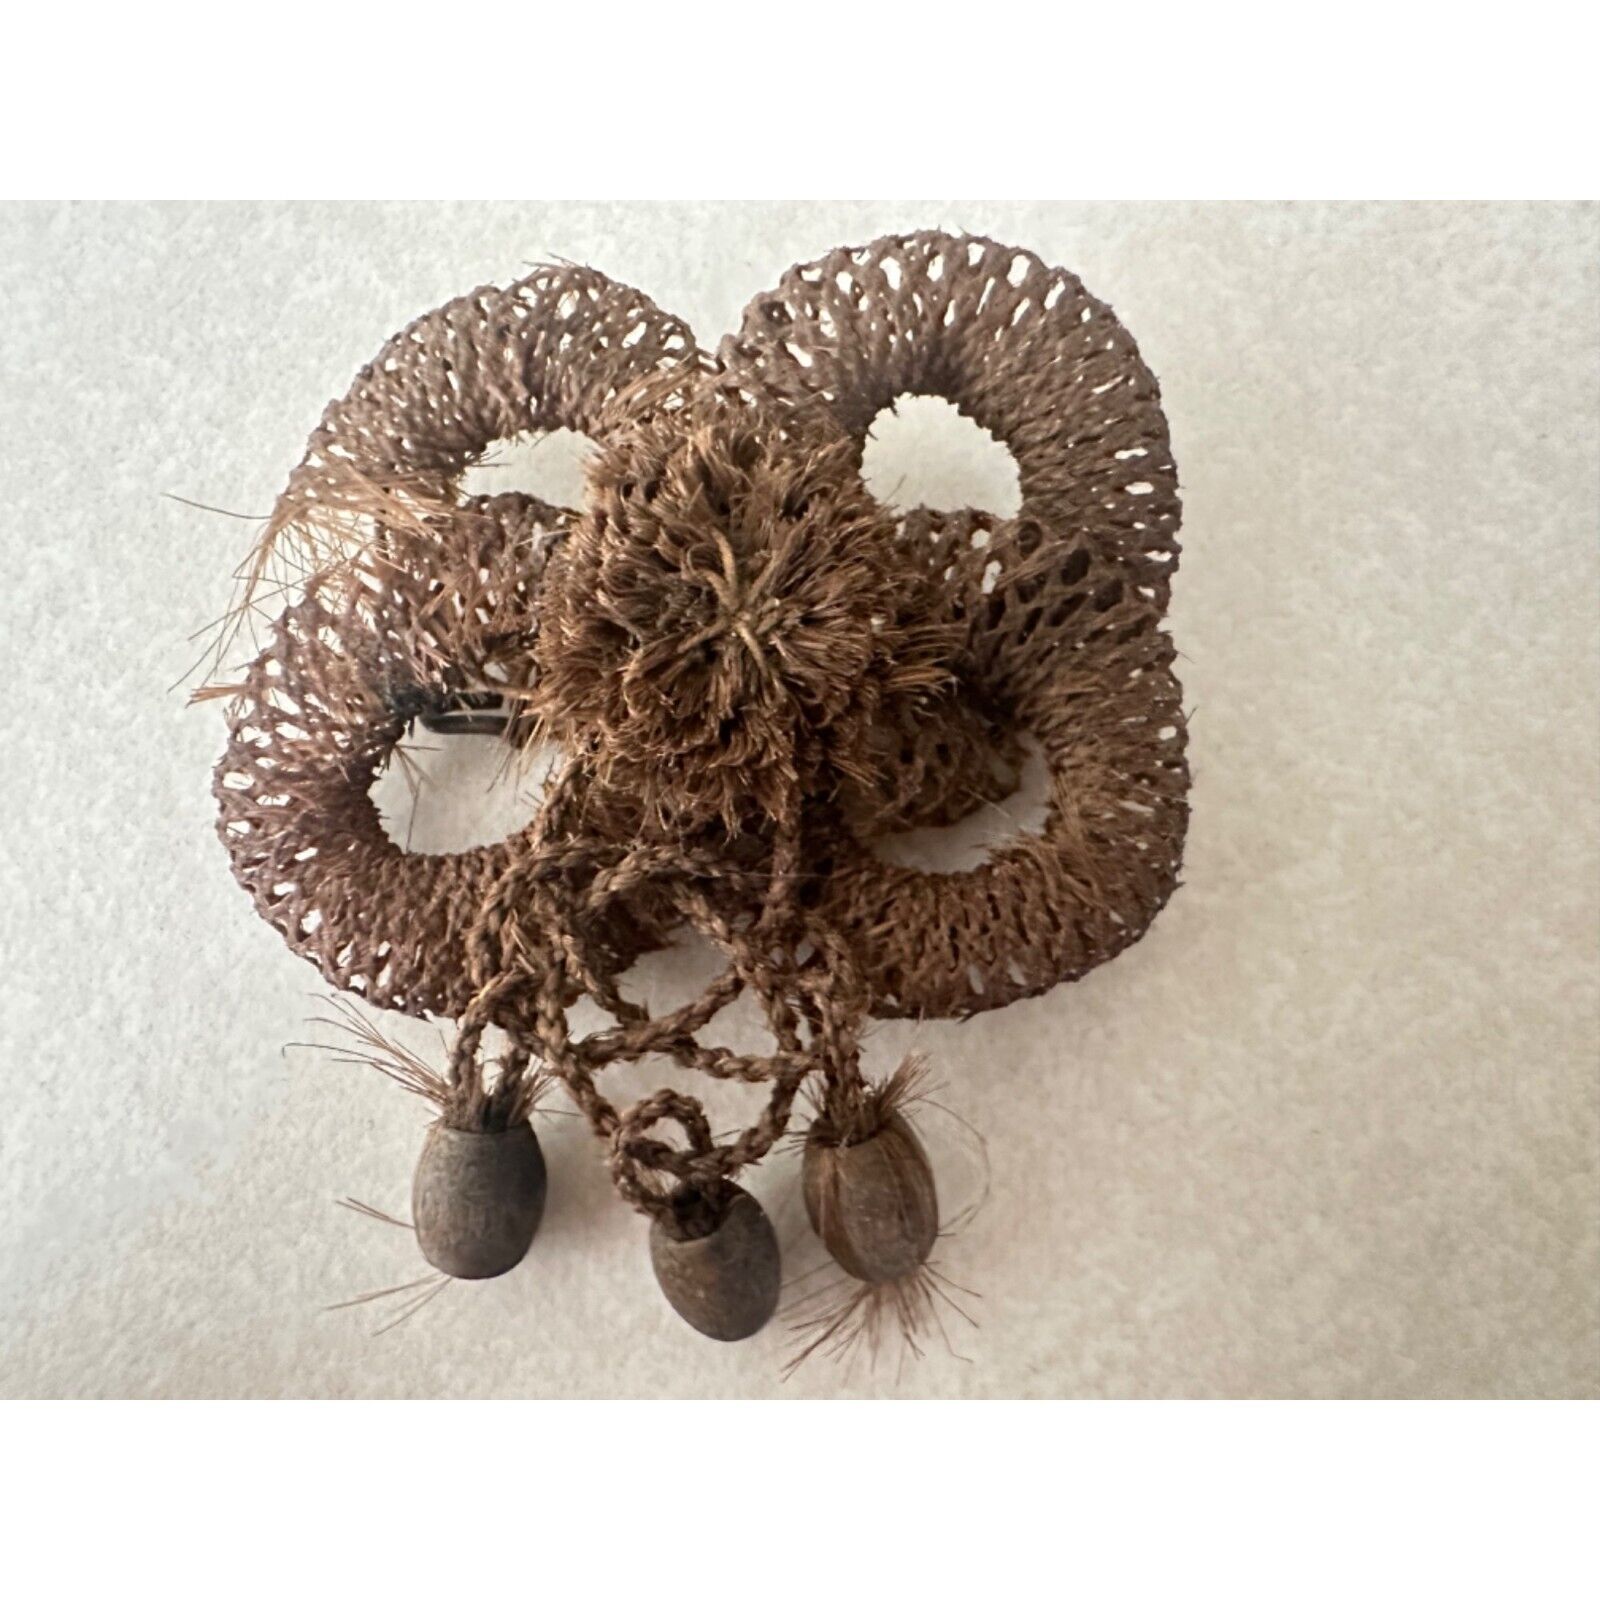 Antique Victorian blonde brown braided hair work hairwork sentimental brooch pin